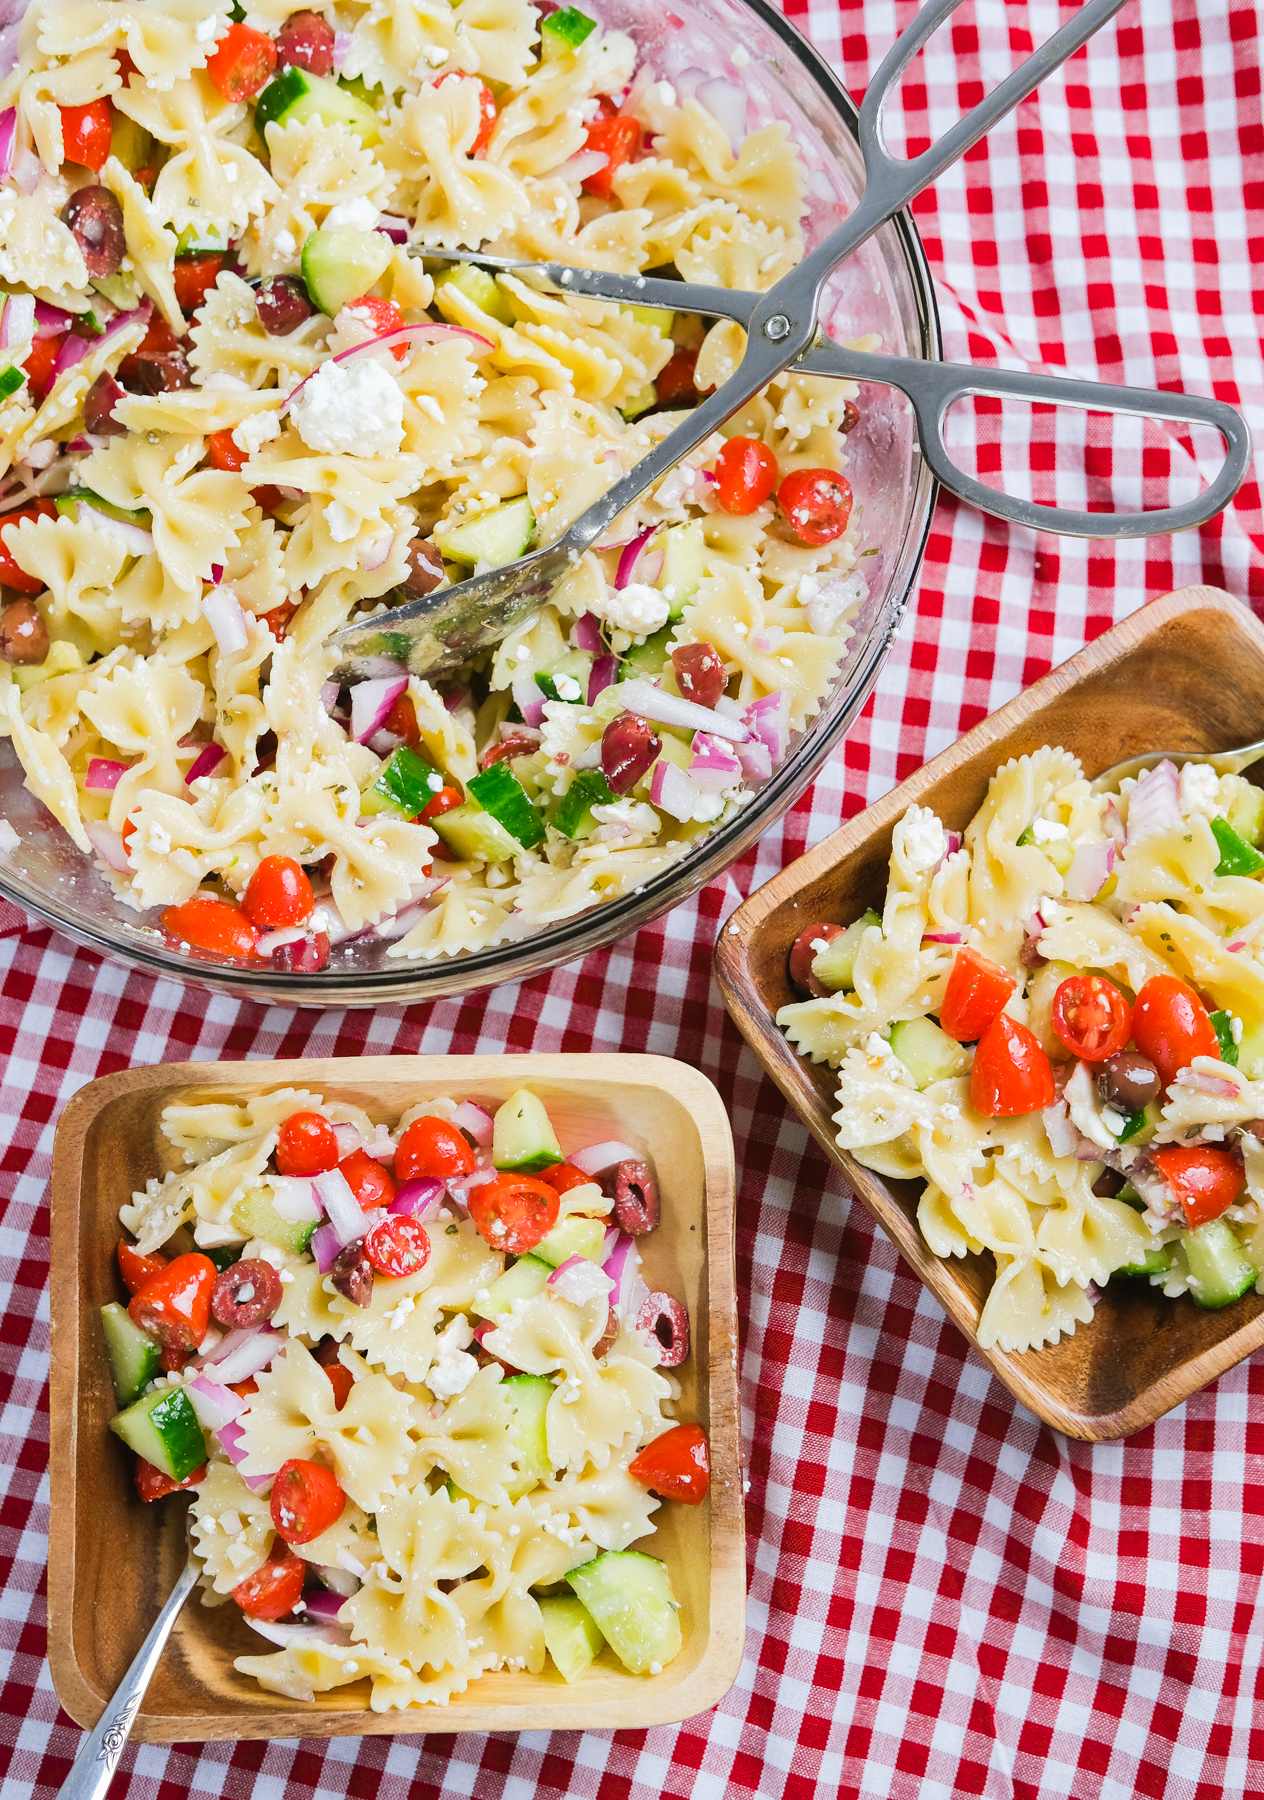 serving pasta salad at a picnic